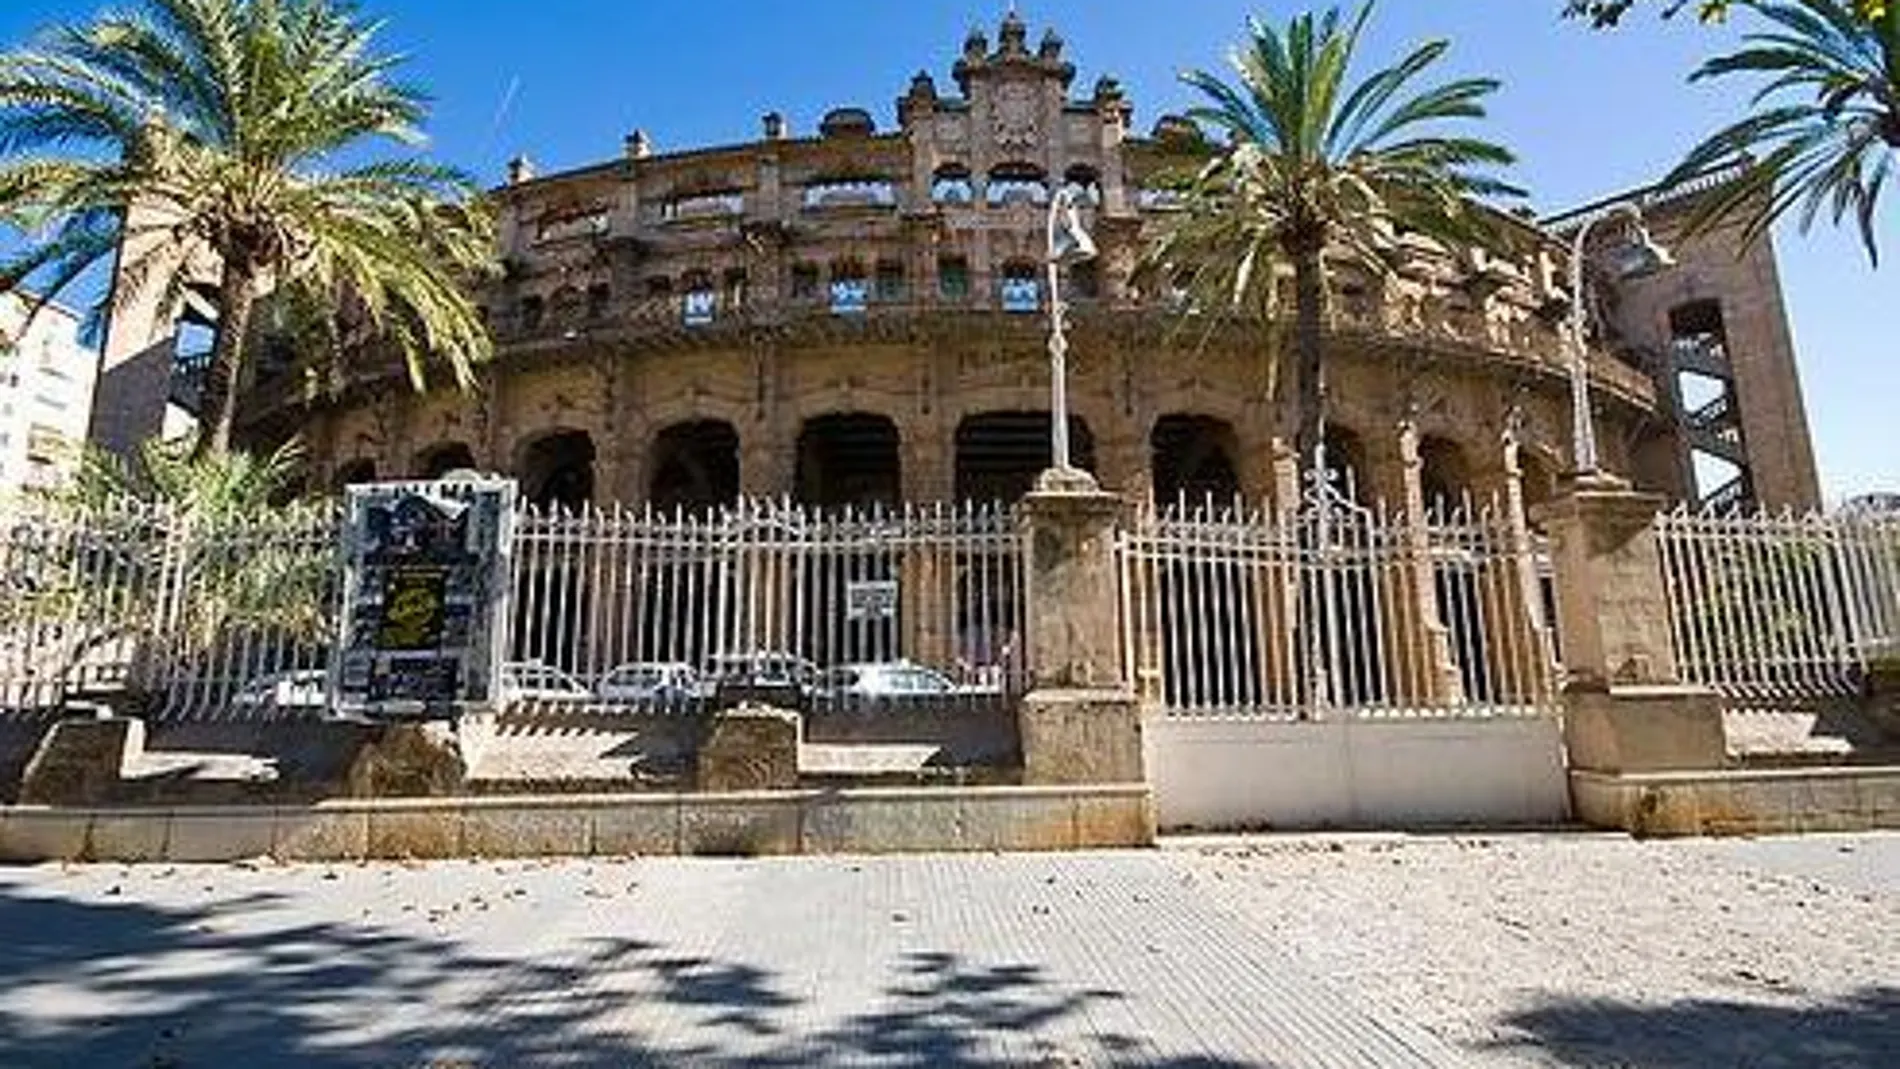 Plaza de toros de Mallorca